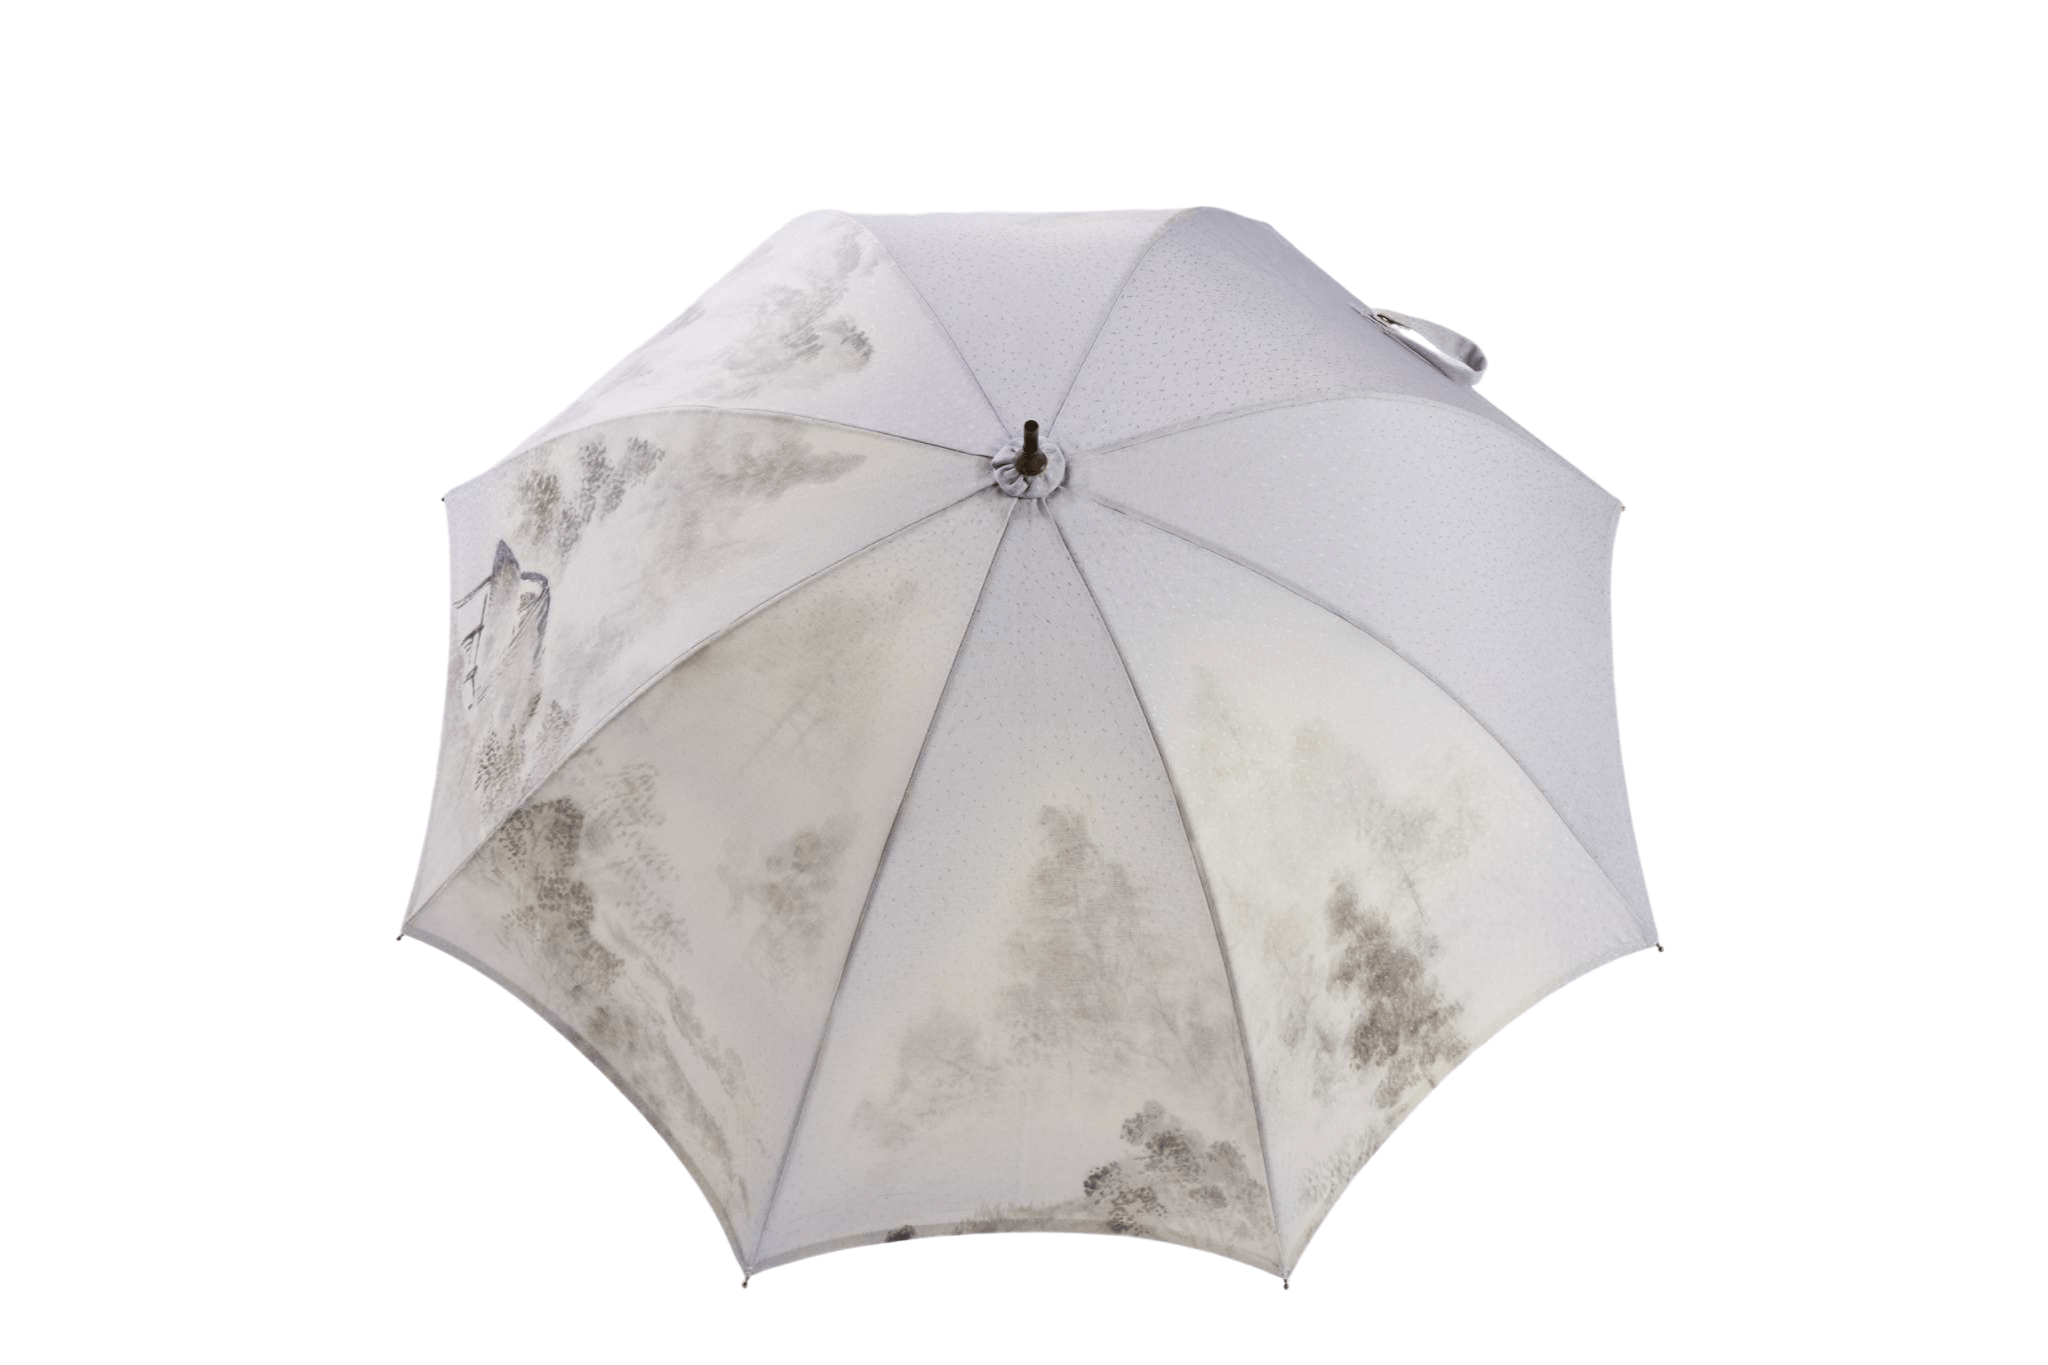 Suminagashi Kimono Umbrella canopy - top view